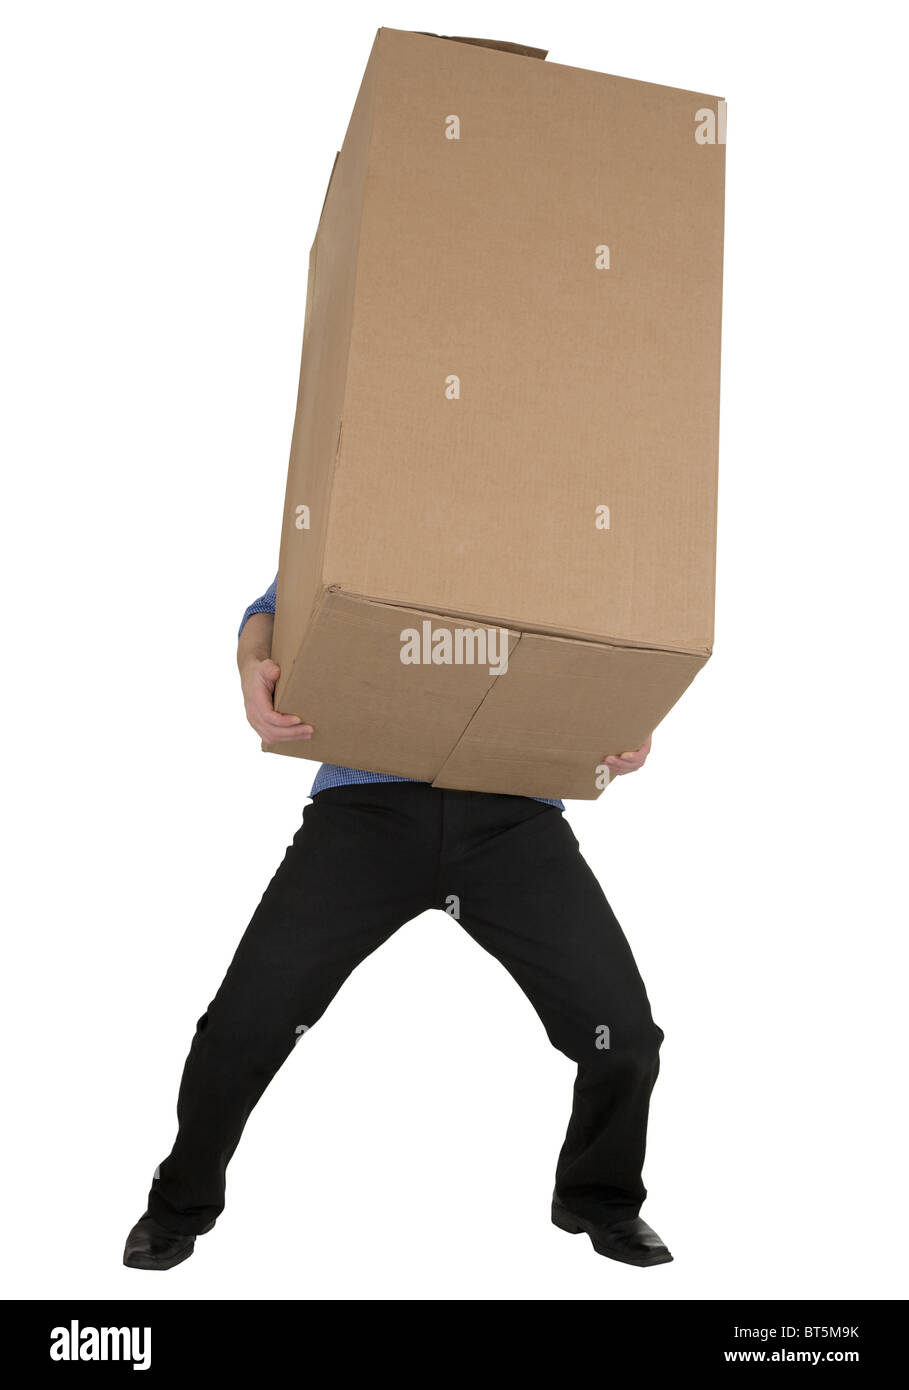 Man and big carton boxes on white Stock Photo - Alamy